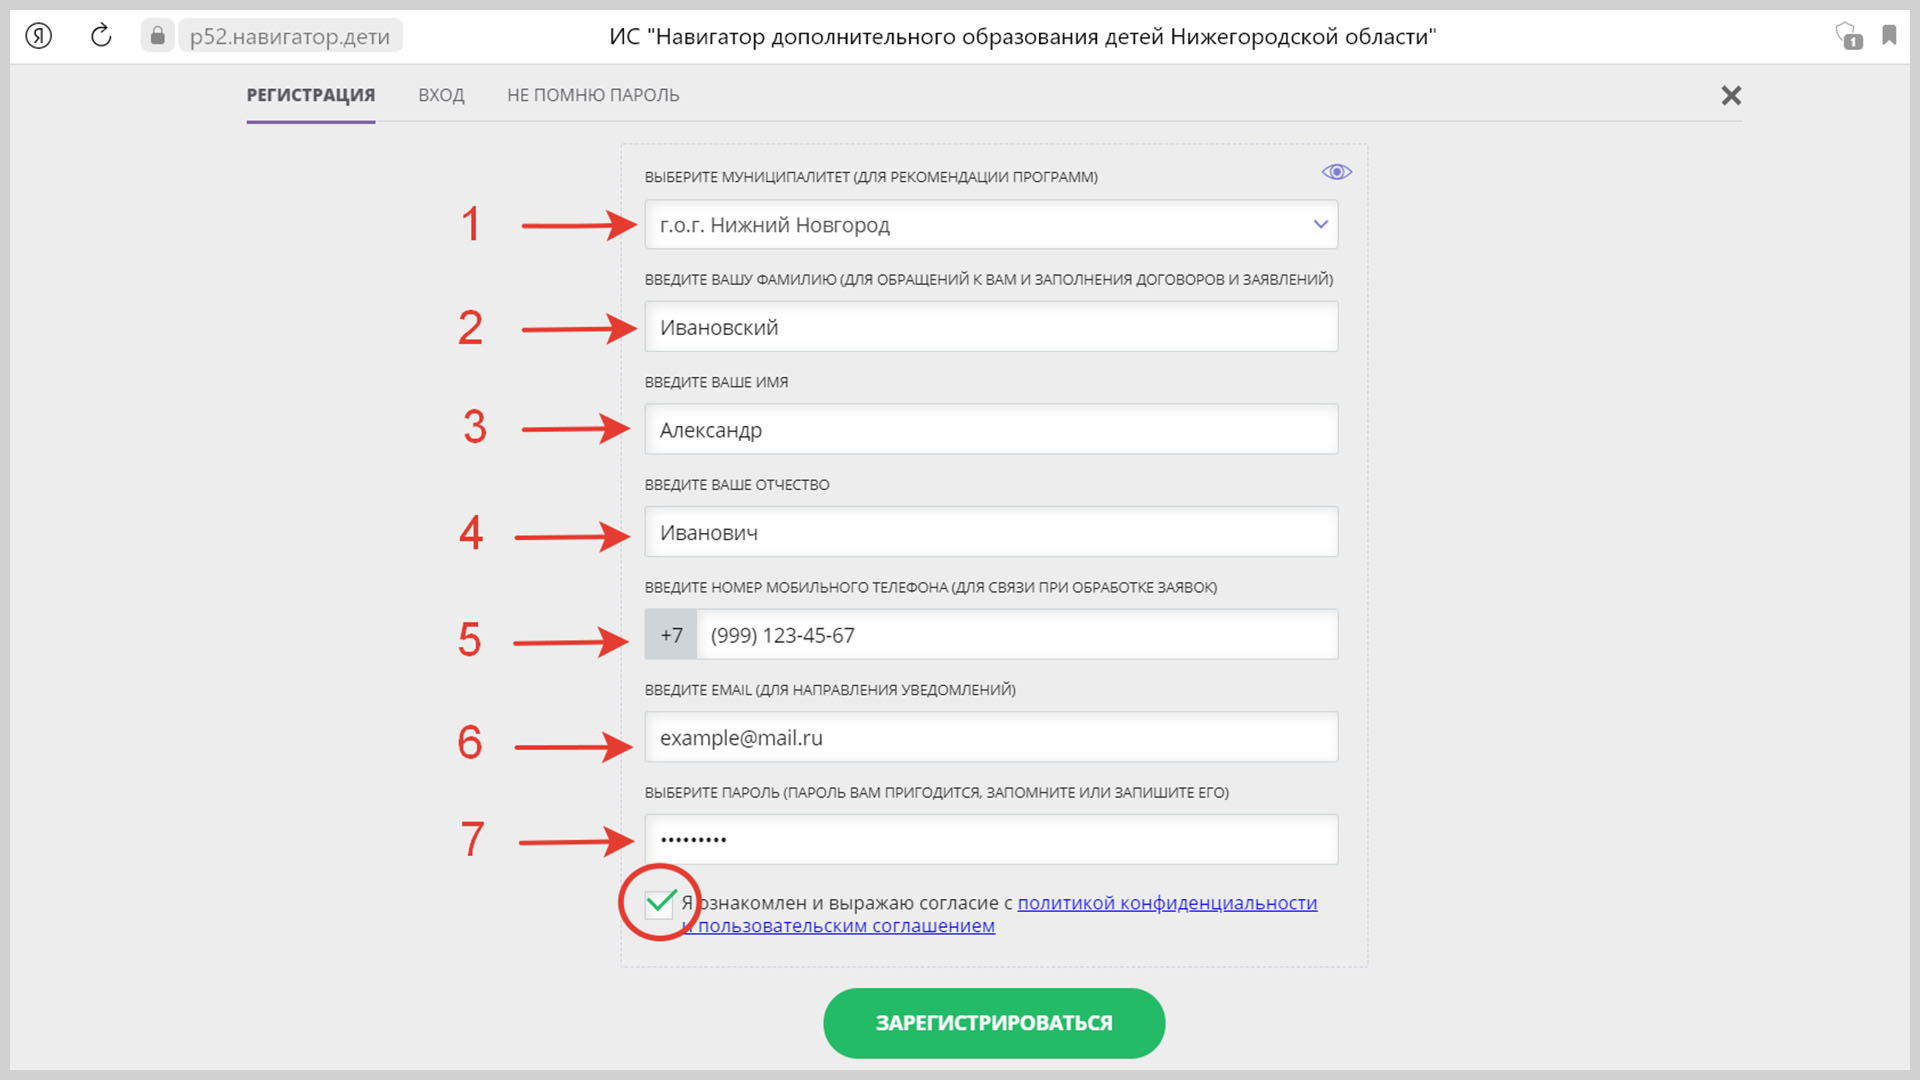 Скриншот регистрационной формы на сайте Навигатор ДОД.